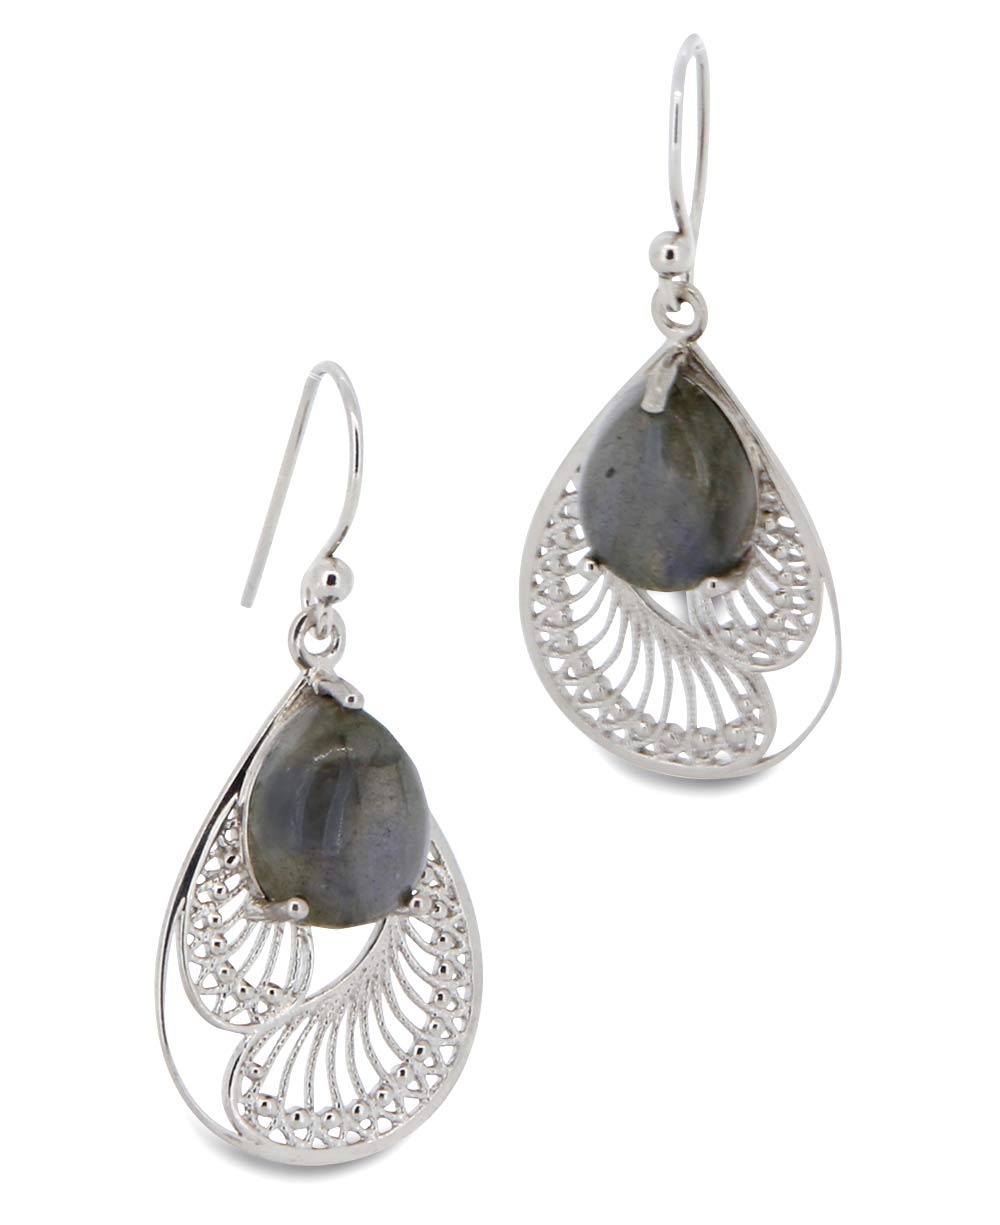 Sterling Silver Labradorite Earrings in Feather Design - Earrings